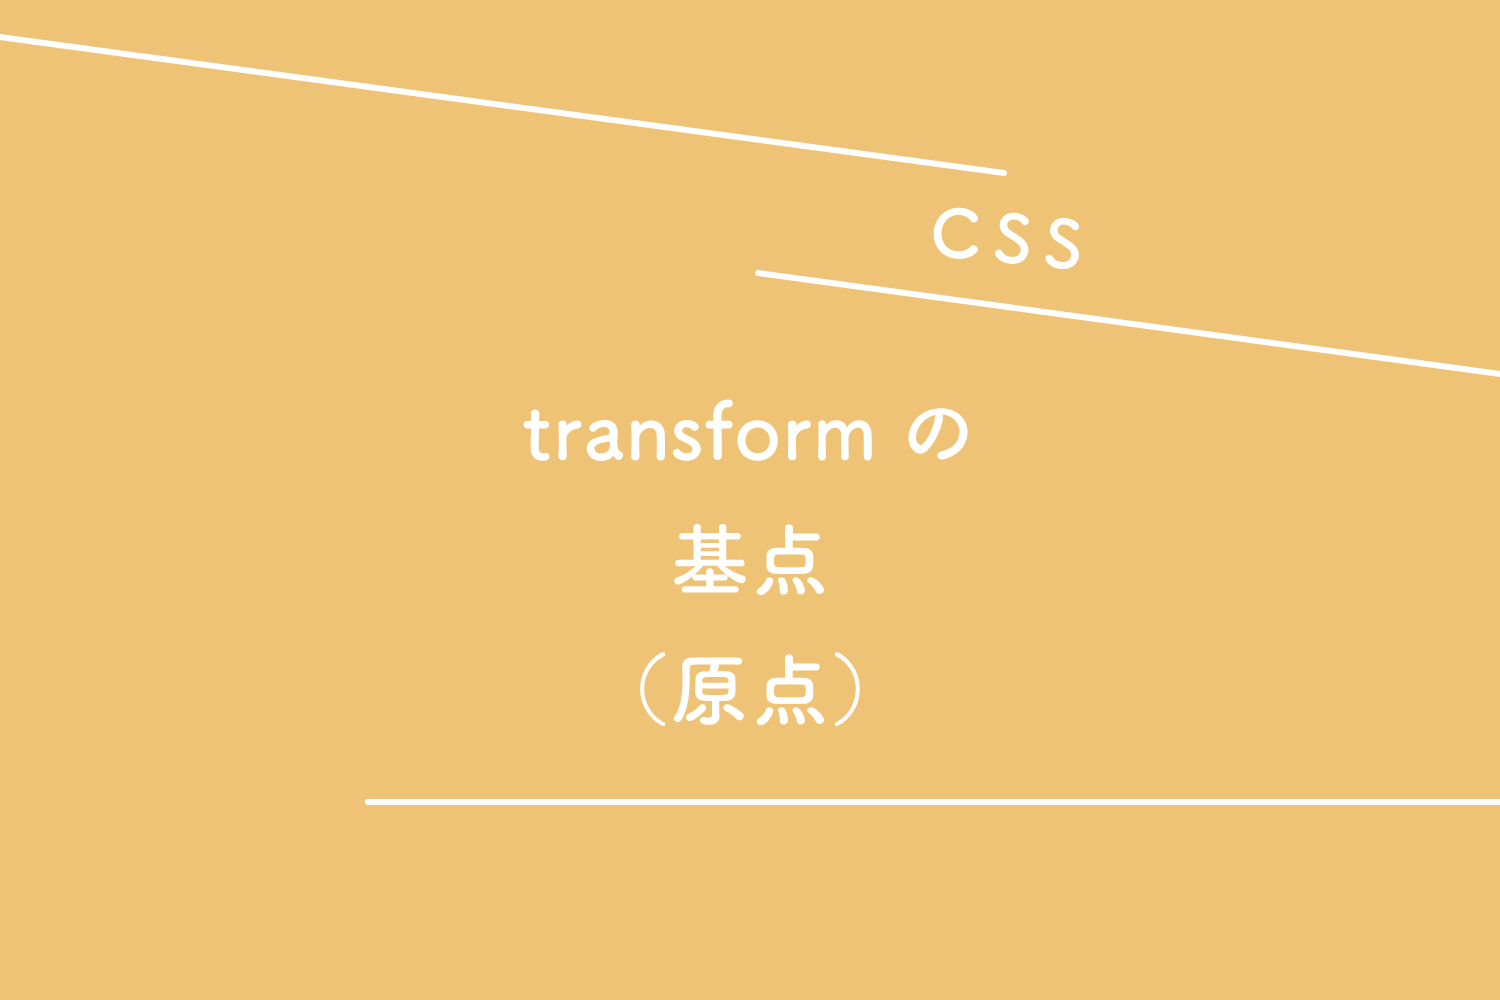 【CSS】transform（トランスフォーム）の基点（原点）